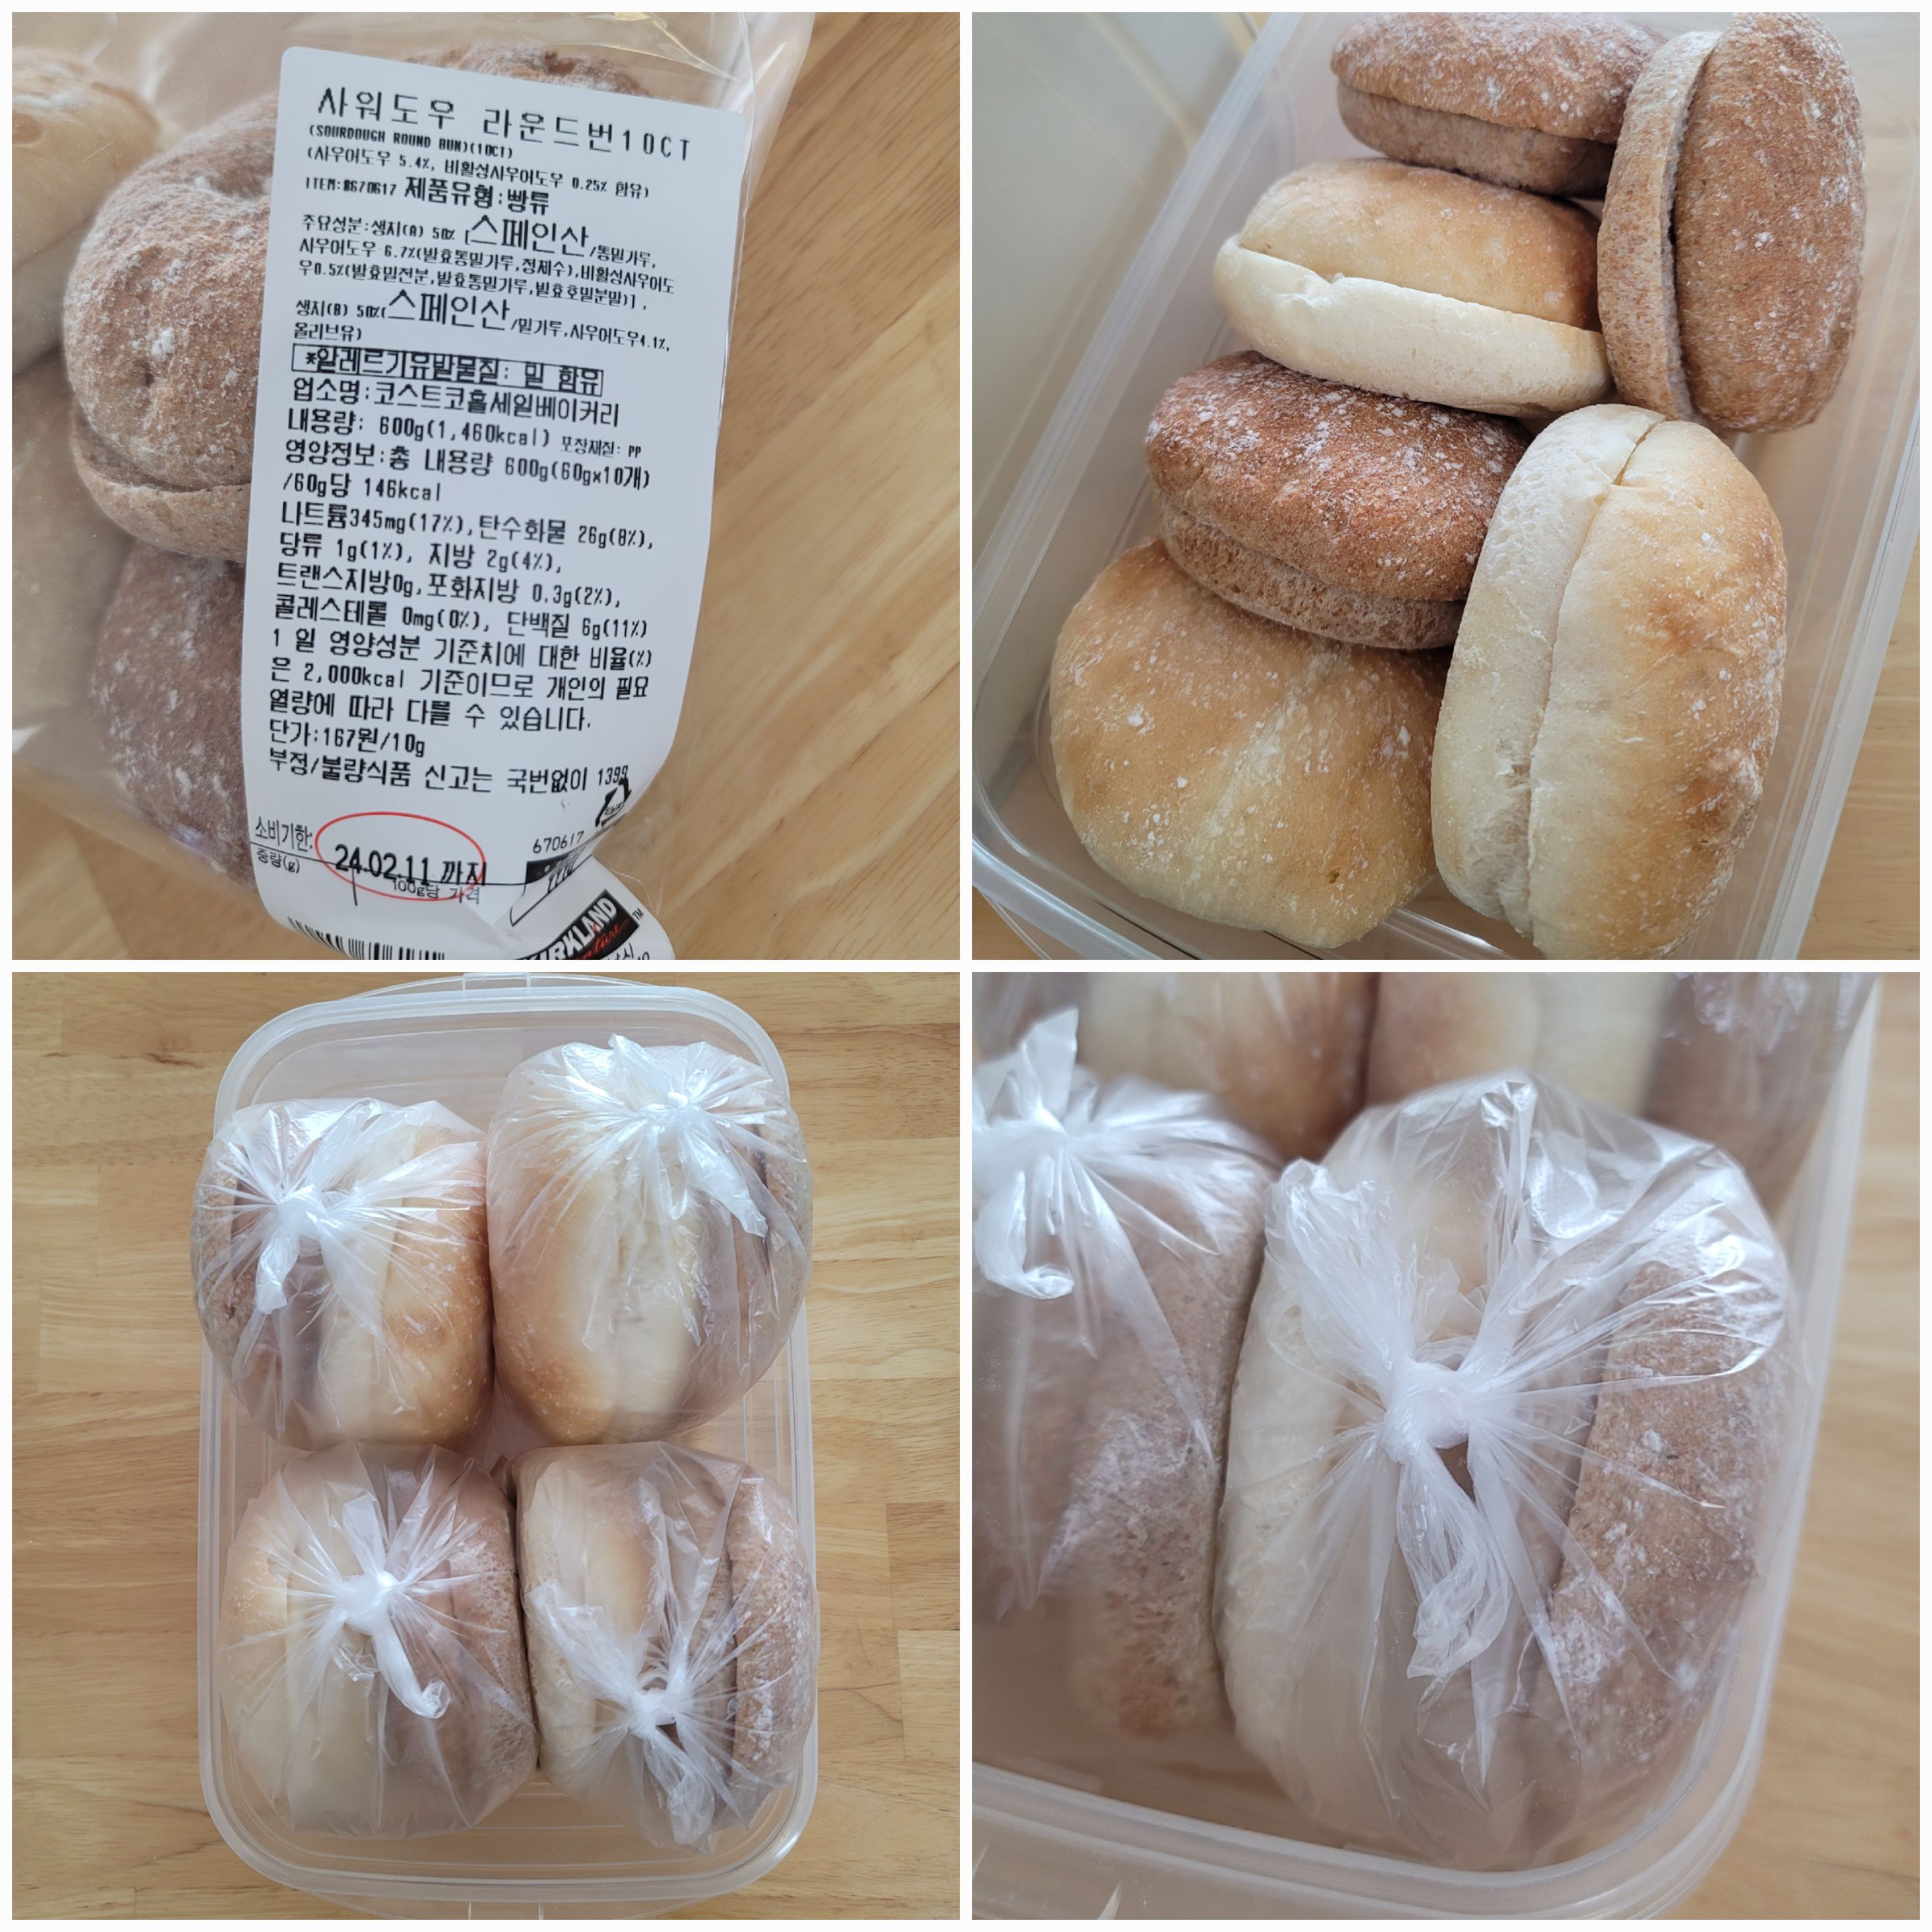 코스트코 빵 추천 사워도우 라운드번 가격 보관 활용 방법